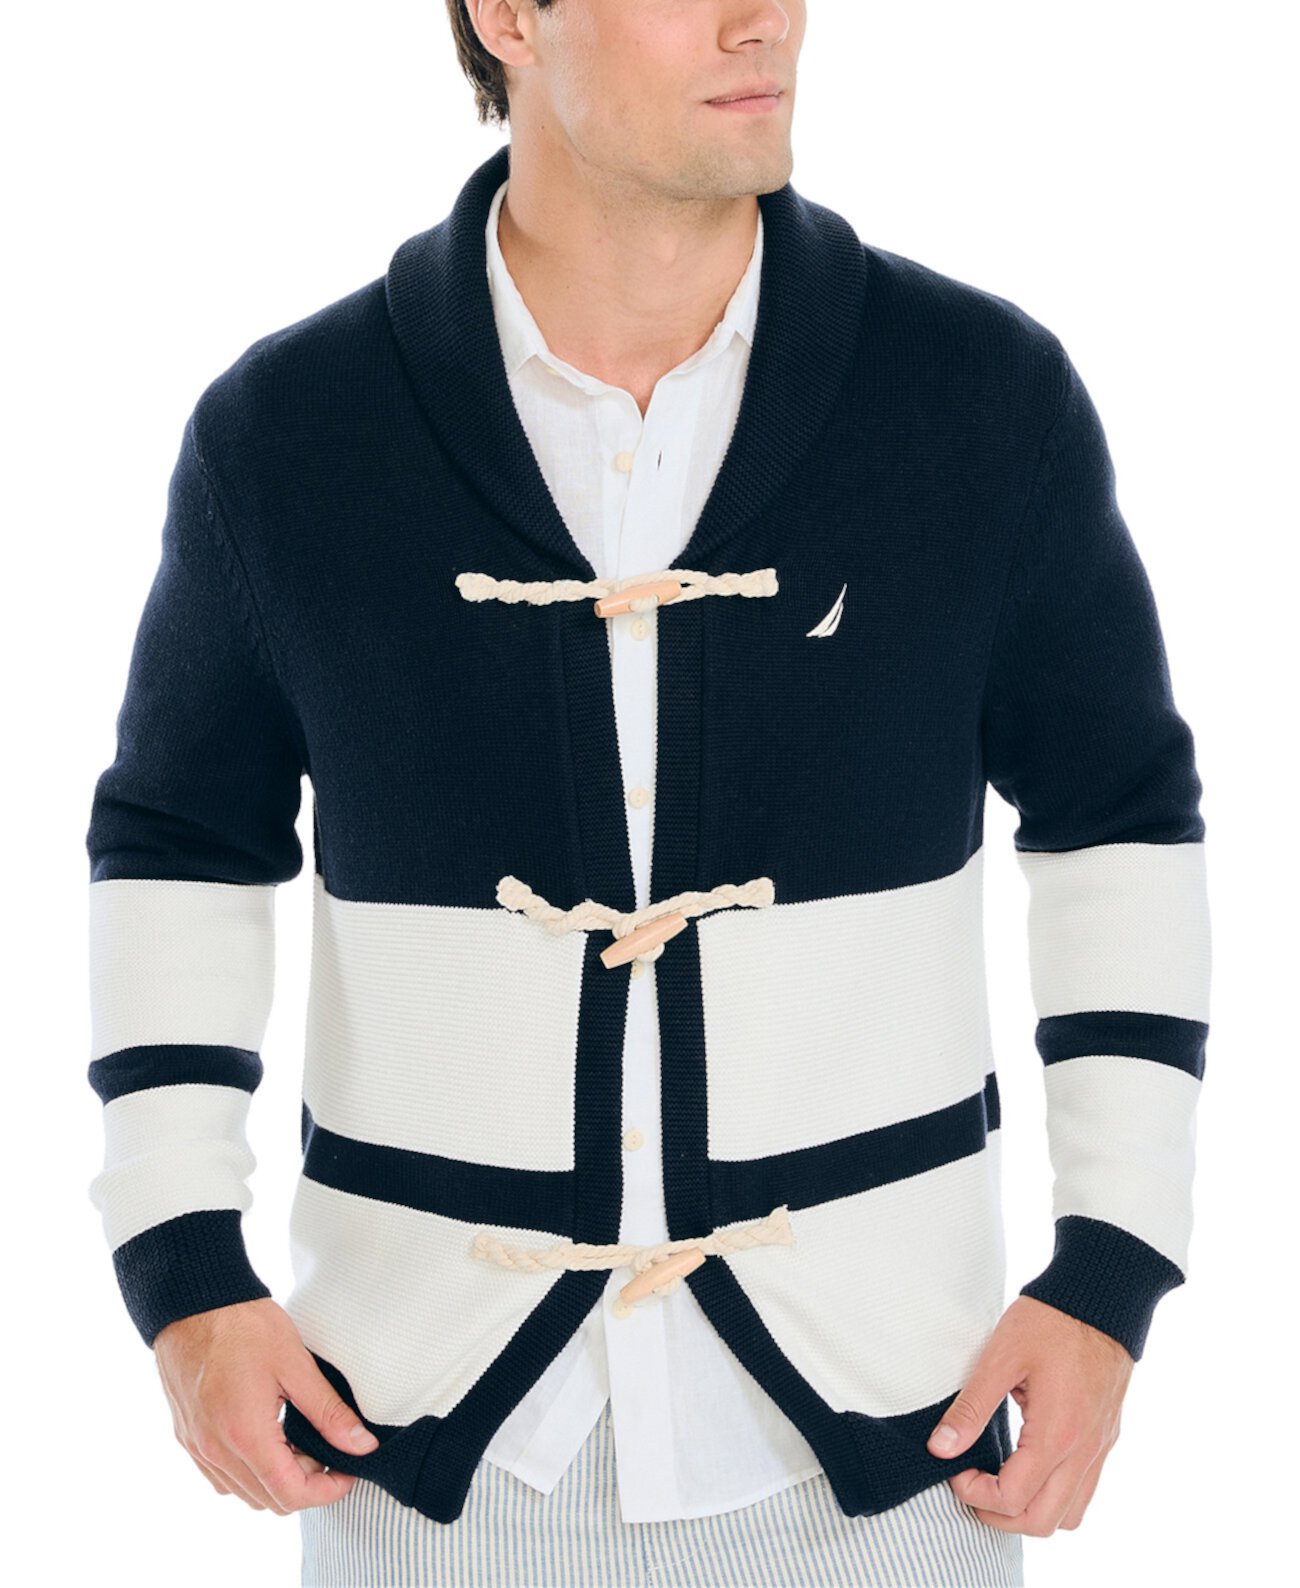 Мужской свитер-кардиган с шалевым воротником и застежкой на застежку Heritage Nautica